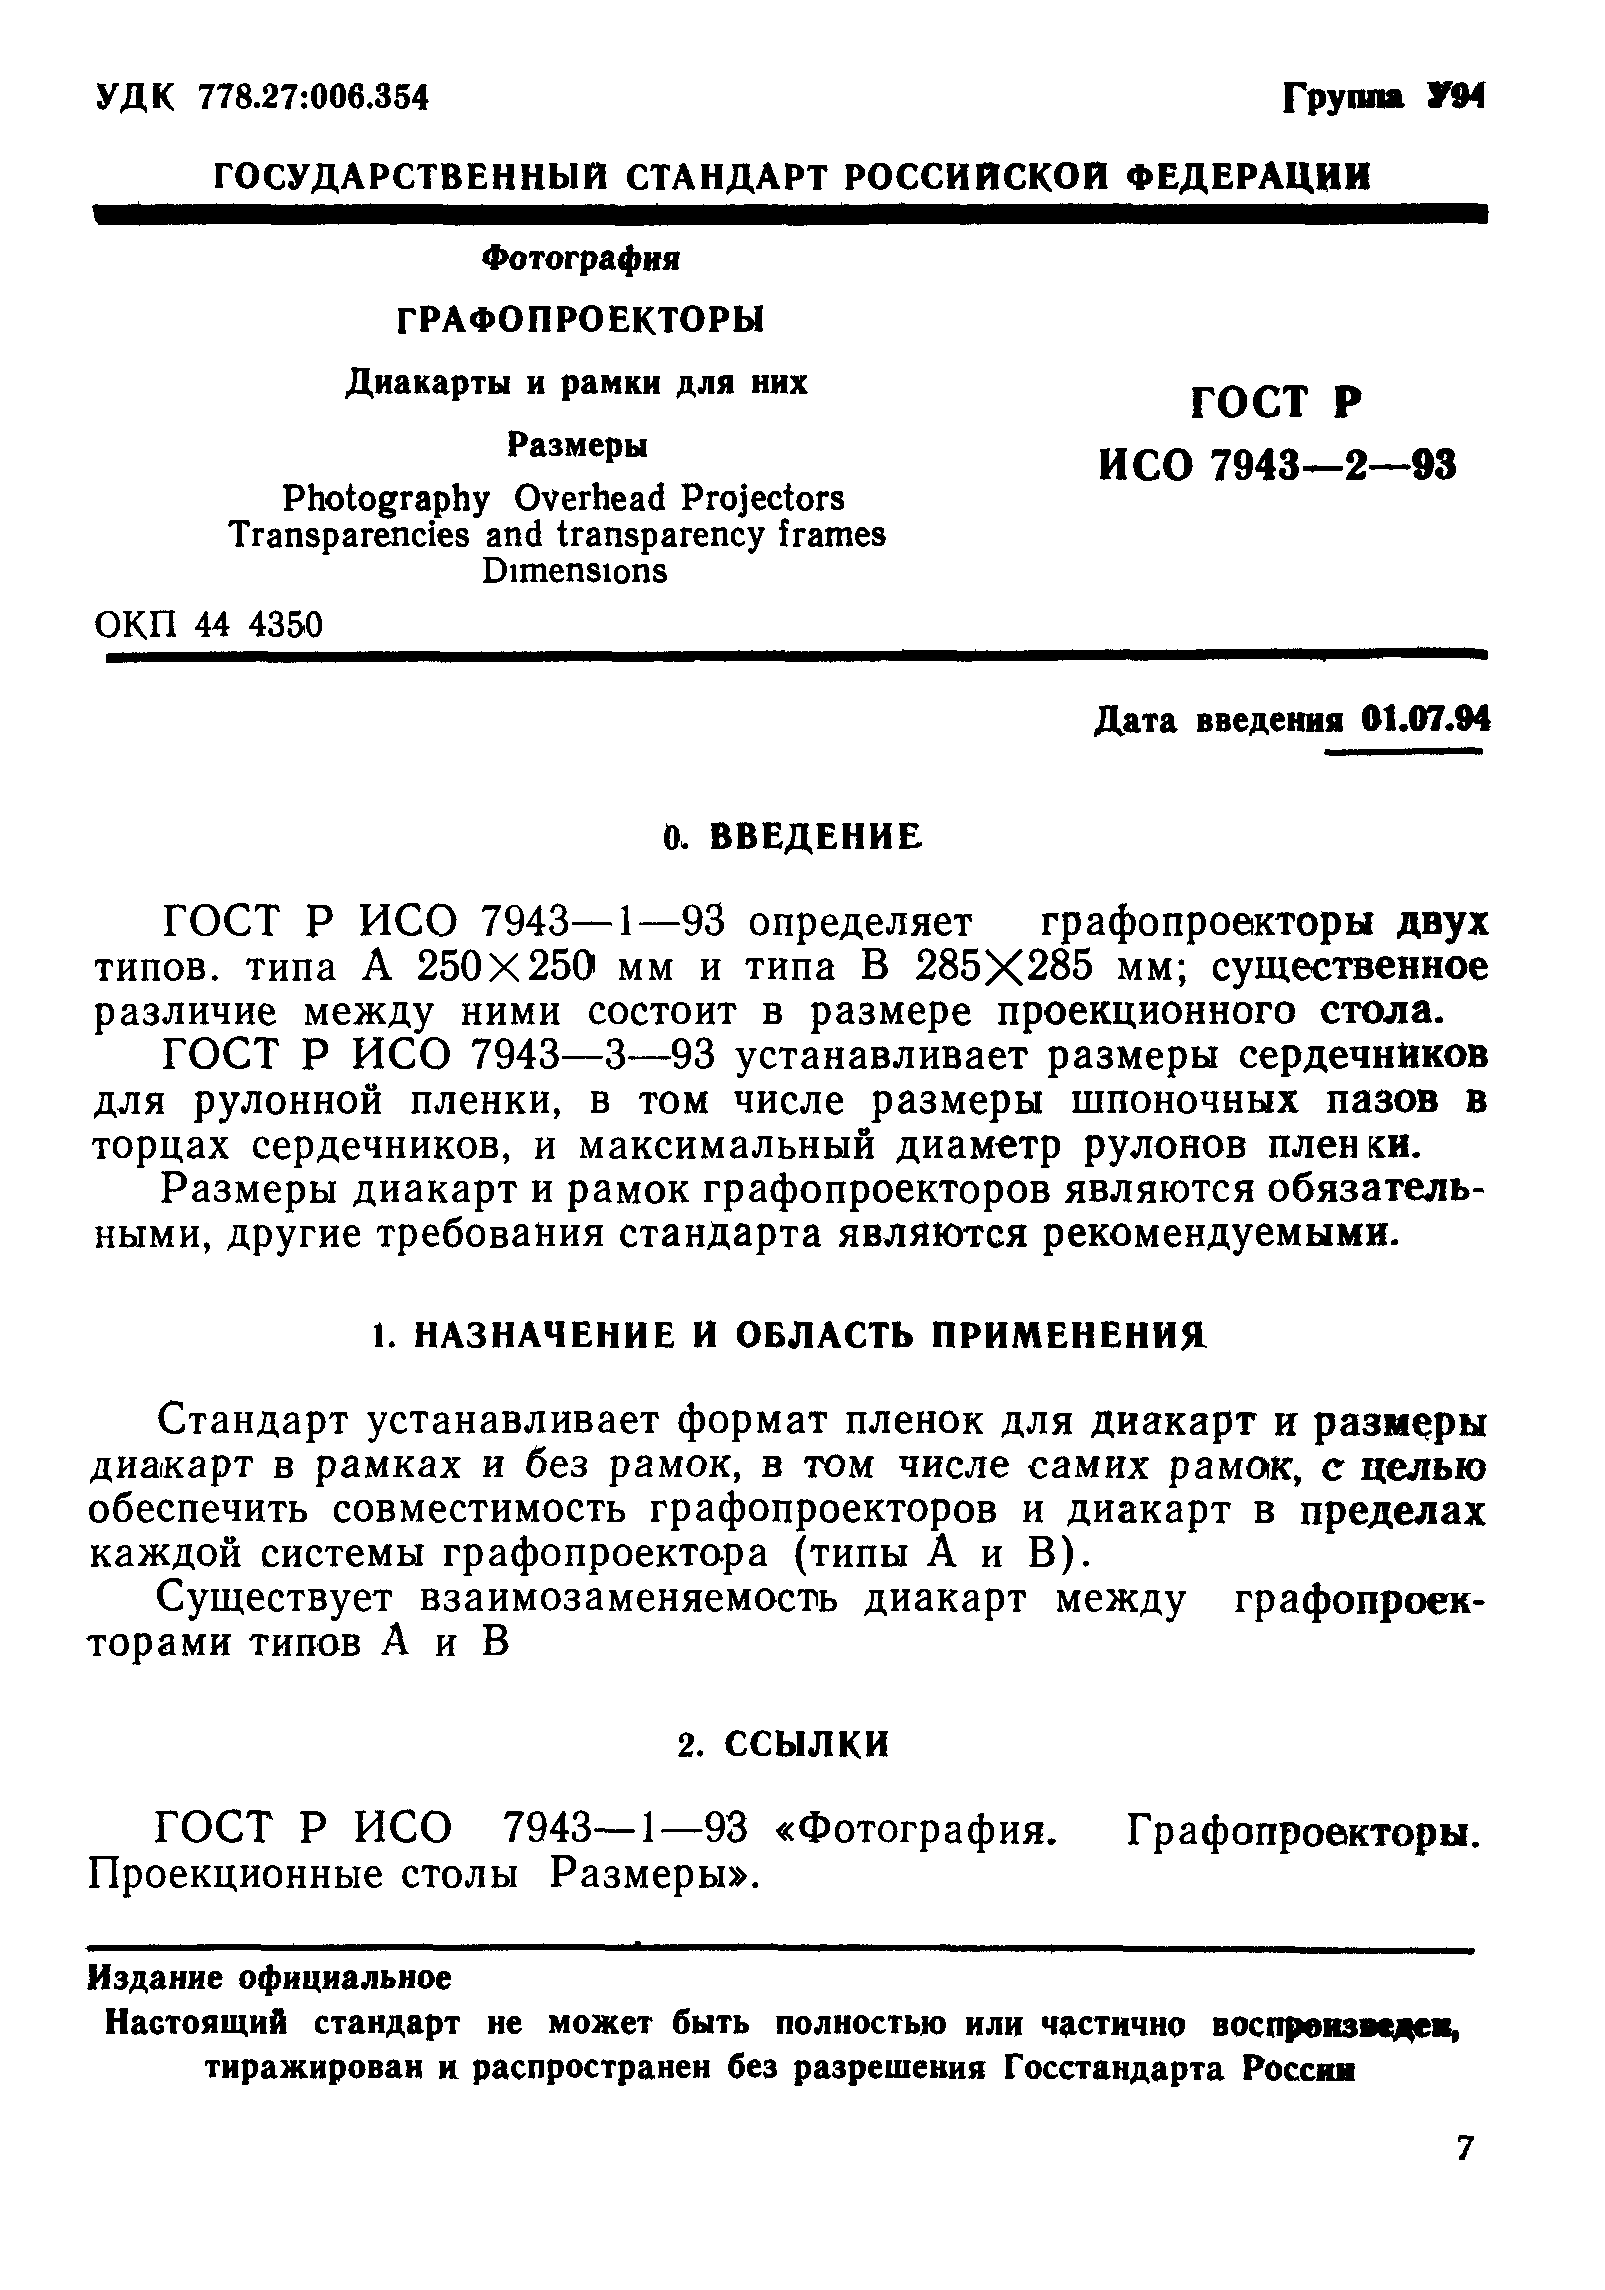 ГОСТ Р ИСО 7943-2-93